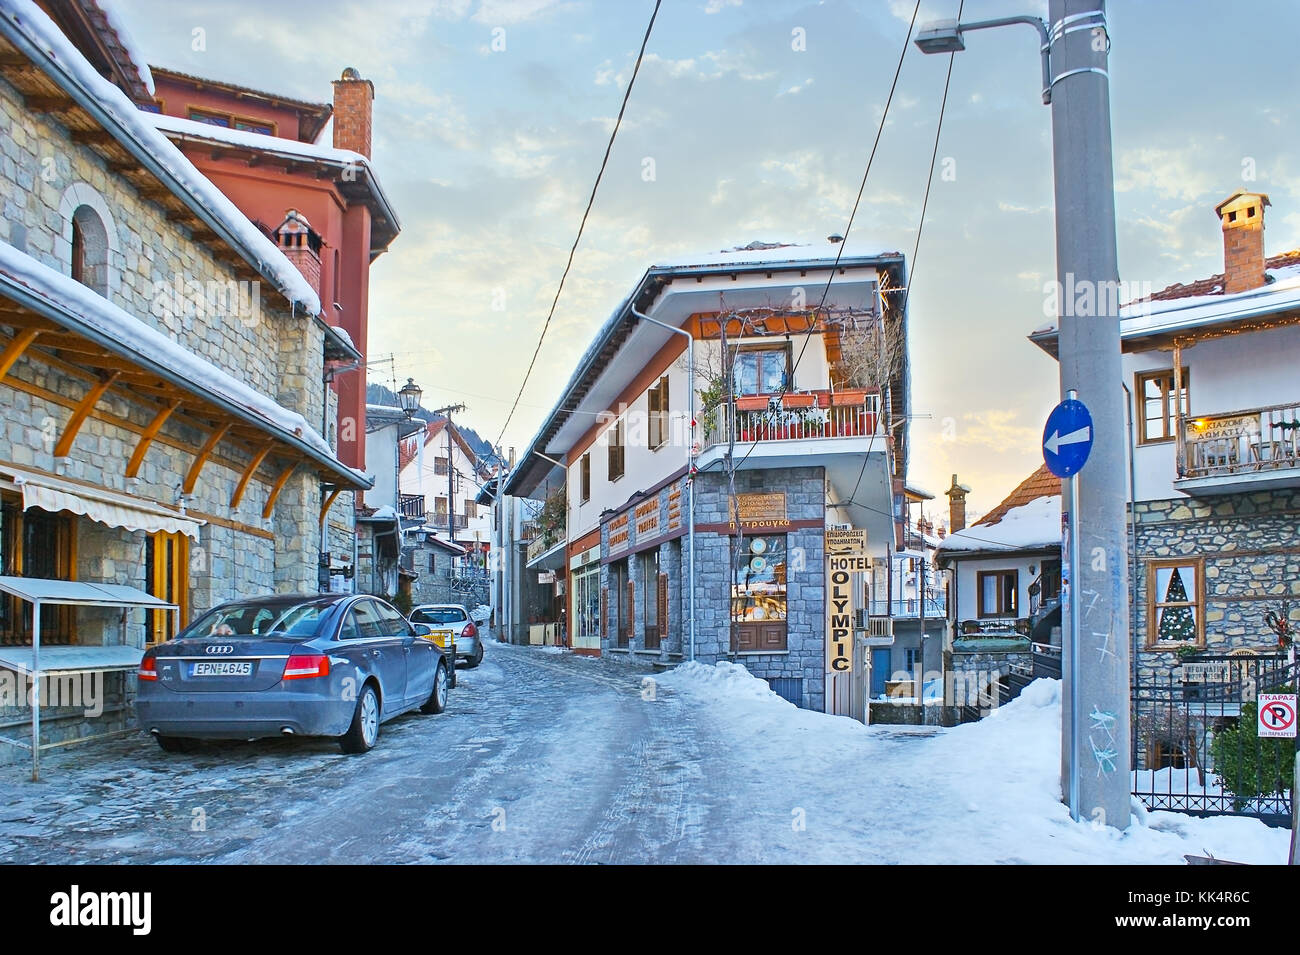 Metsovo, Griechenland - Januar 2, 2012: Die kurvenreiche Straße der alten Stadt mit traditionellen Häusern der Region Epirus, mehrere Geschäfte und Hotels, zum 2. Januar Ich Stockfoto